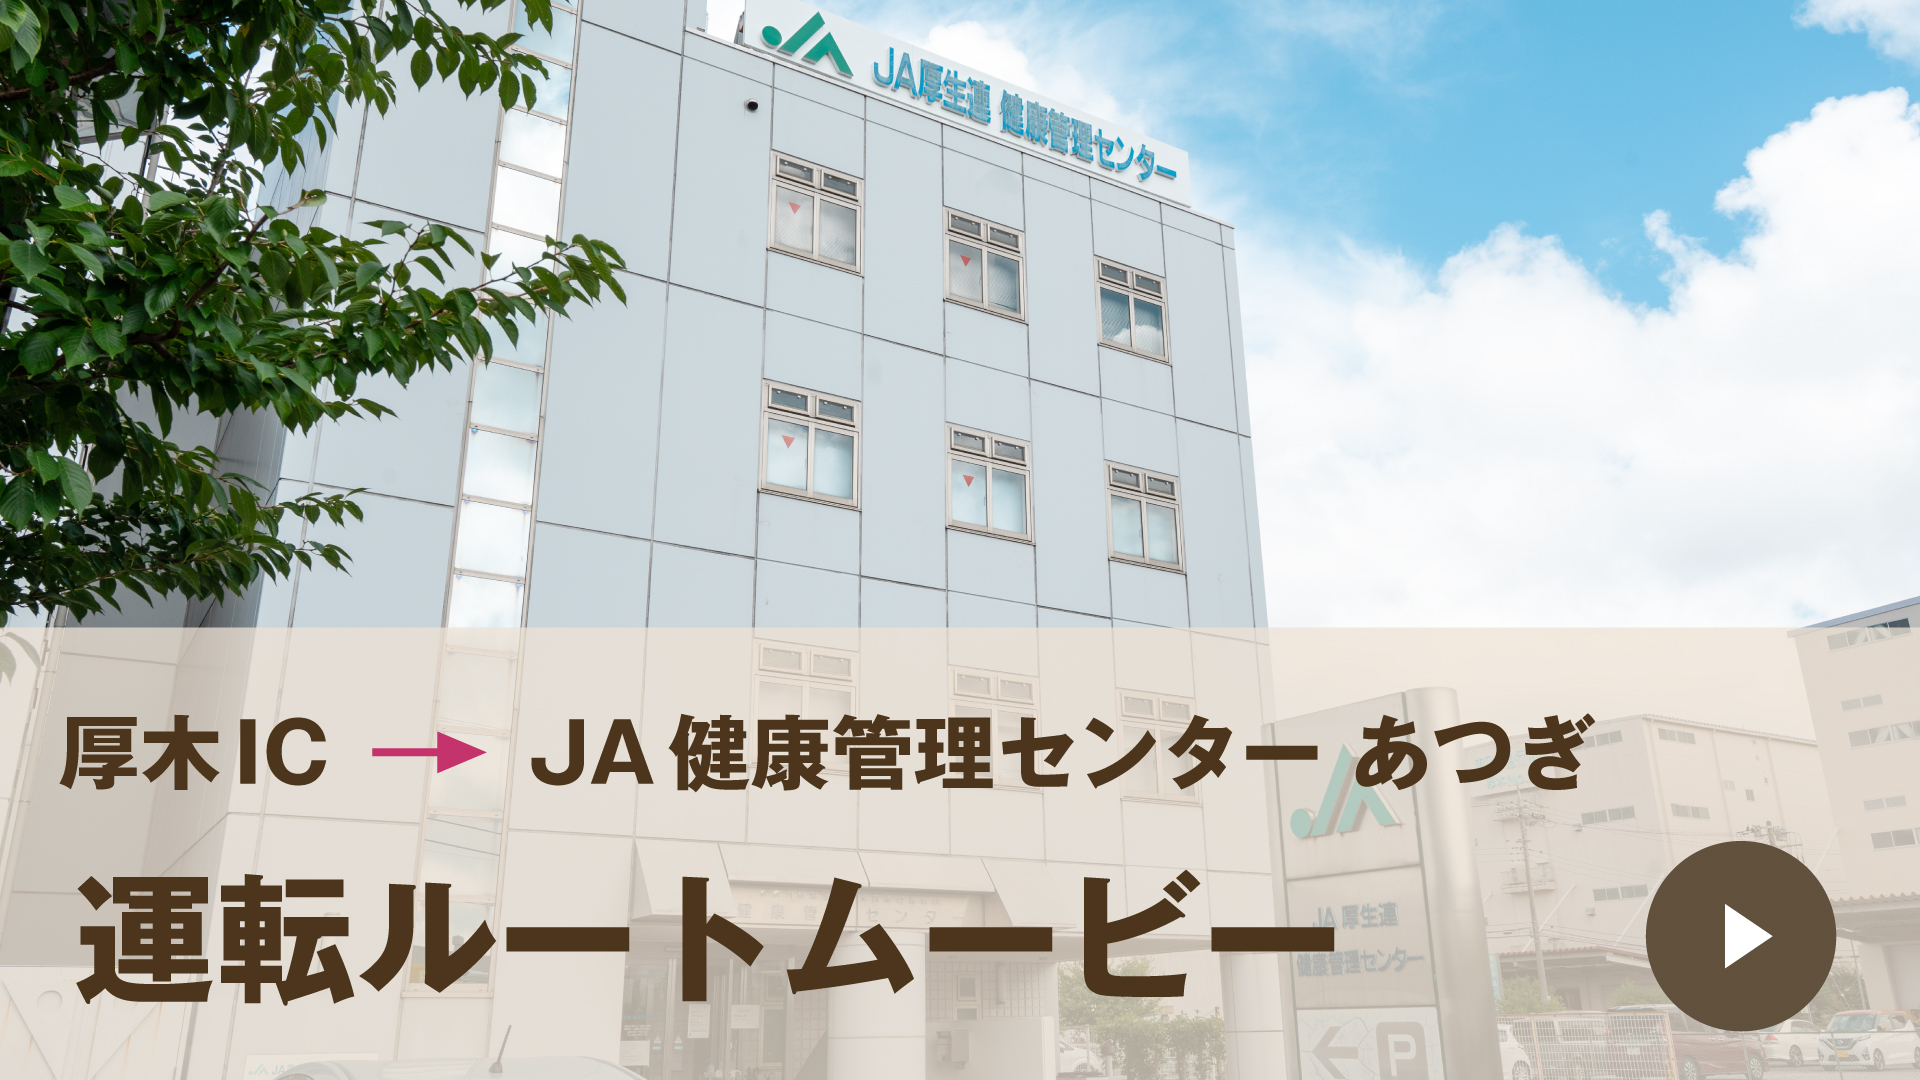 JA神奈川厚生連 健康管理センターあつぎ